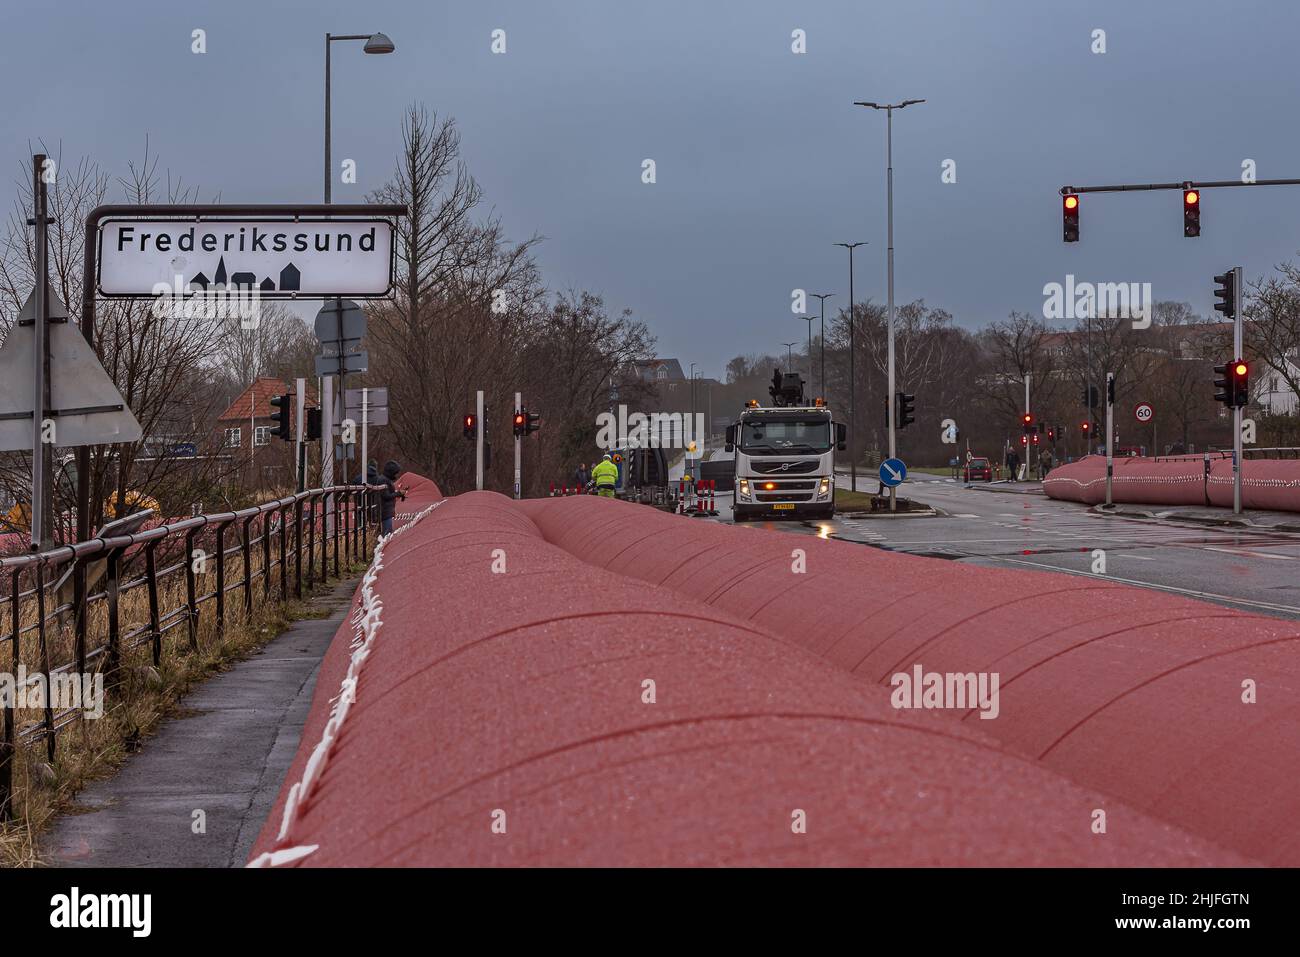 Grande tubo d'acqua rosa per prevenire la tempesta Malik a Frederikssund per inondare la città Fredrikssund, Danimarca, 29 gennaio 2022 Foto Stock